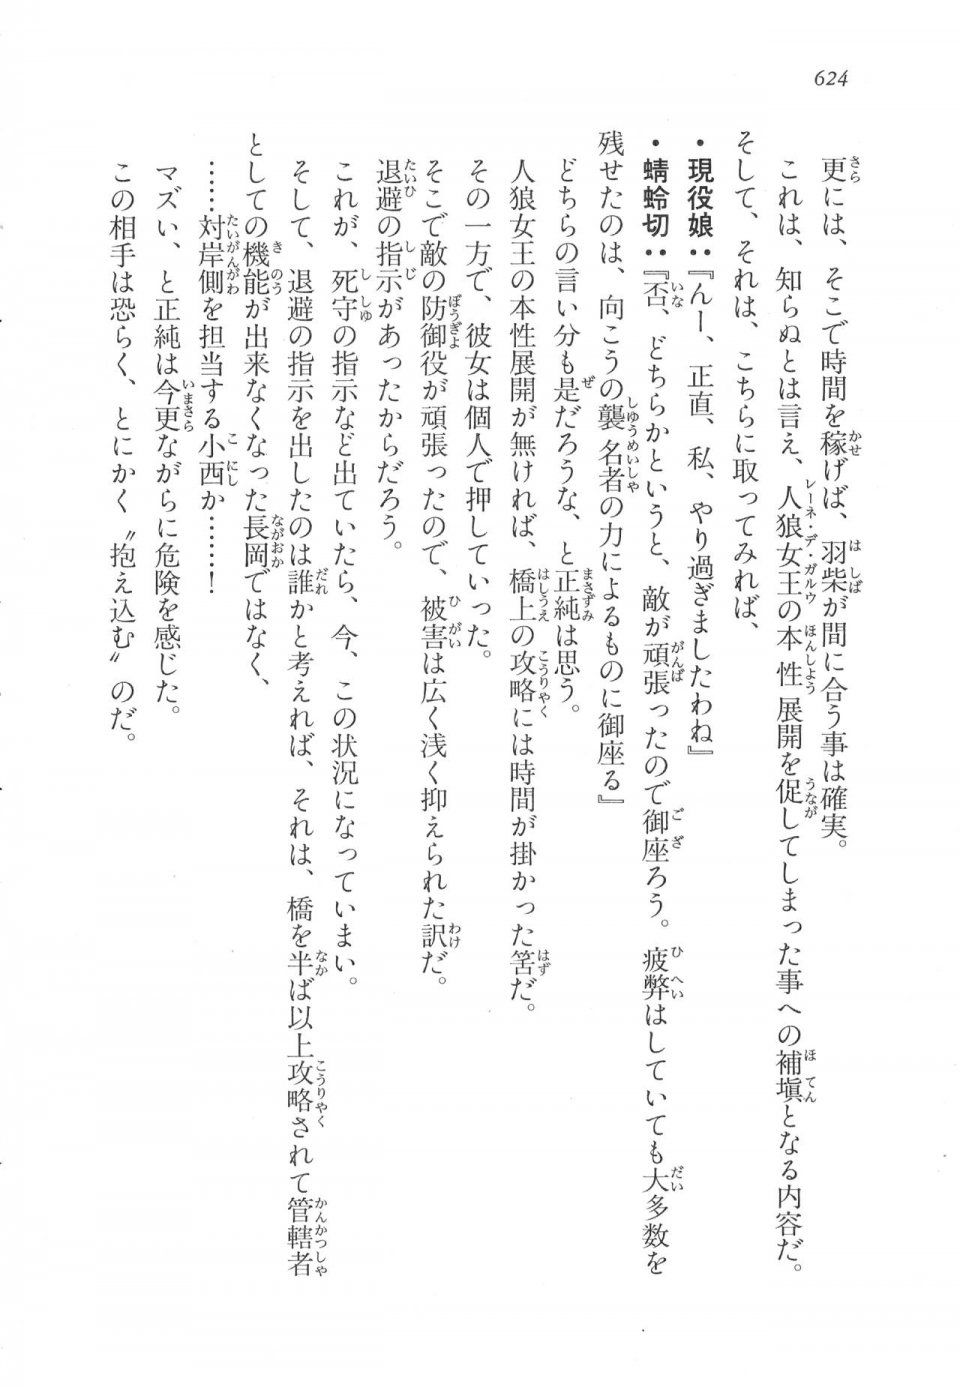 Kyoukai Senjou no Horizon LN Vol 17(7B) - Photo #626